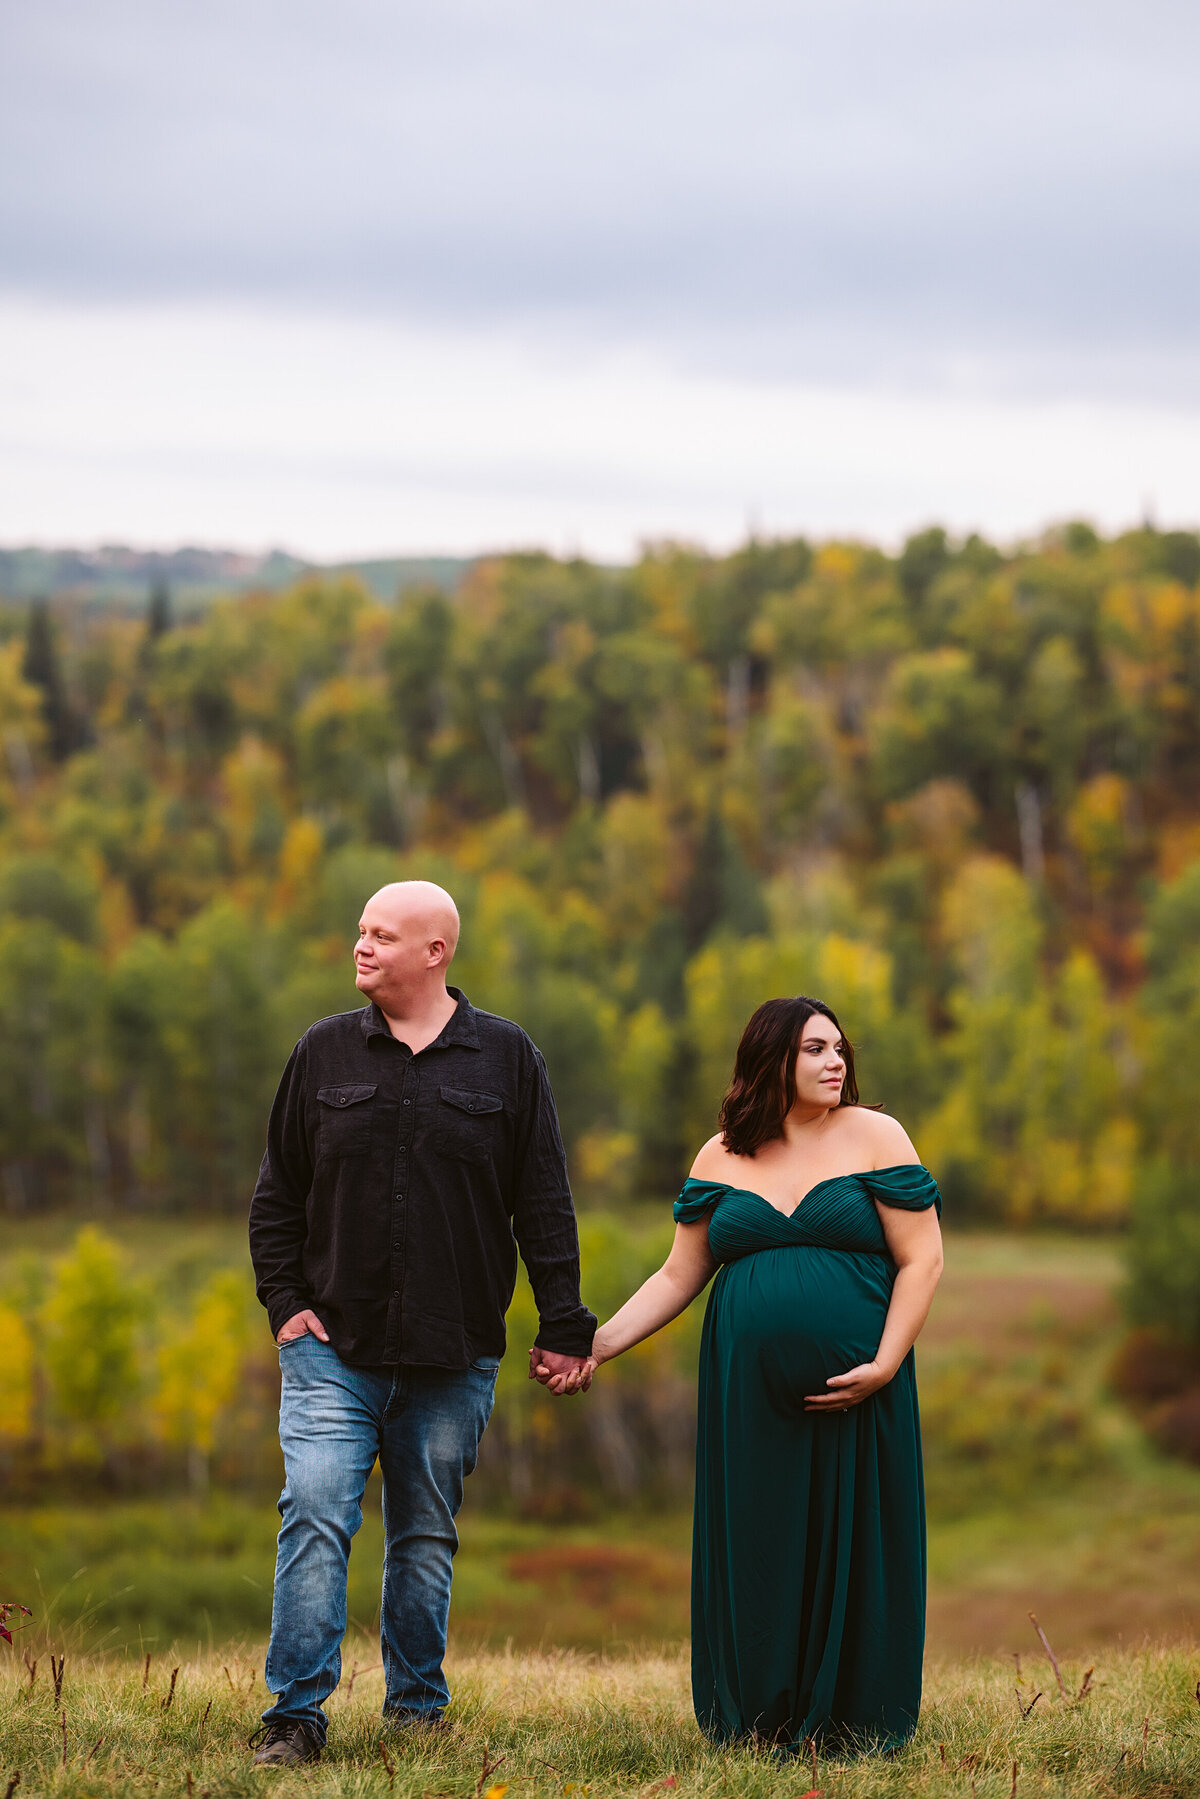 Minnesota-Alyssa Ashley Photography-Chelsie + Eric maternity session-8